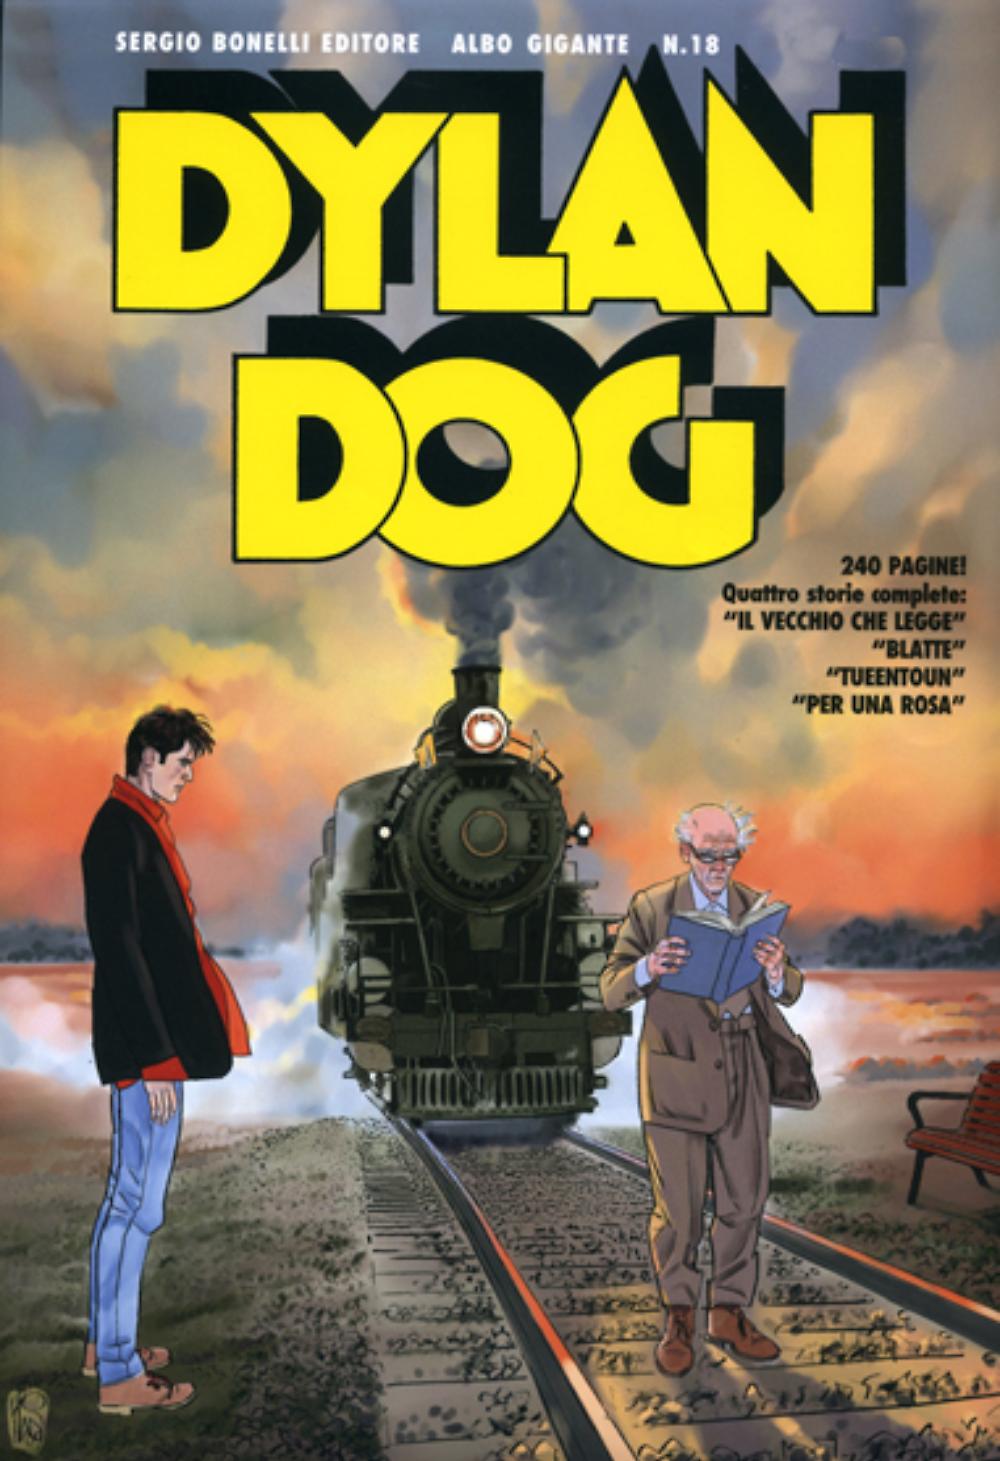 DPBOT – Fumetto – Bonelli – Dylan Dog Gigante # 18...